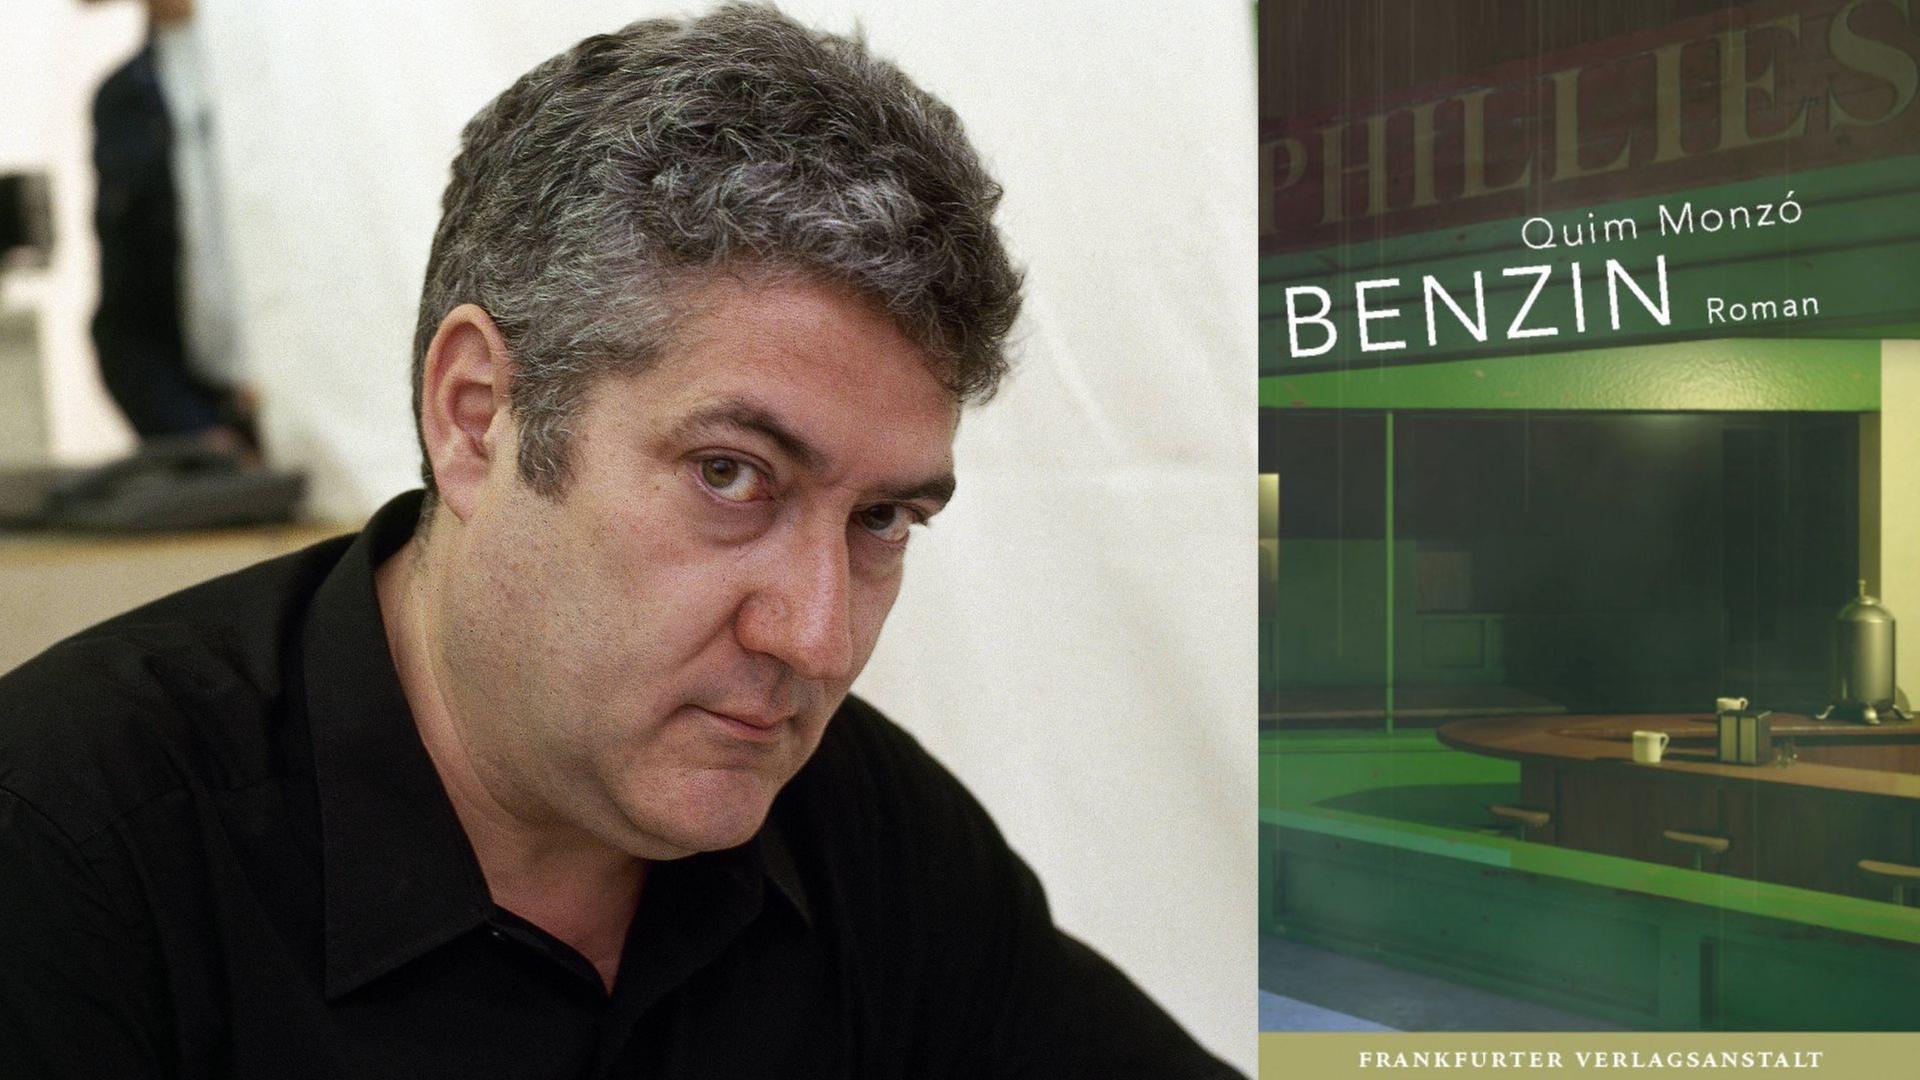 Quim Monzó: "Benzin"

Zu sehen sind der Autor und das Buchcover, darauf ein Cafe bei Nacht